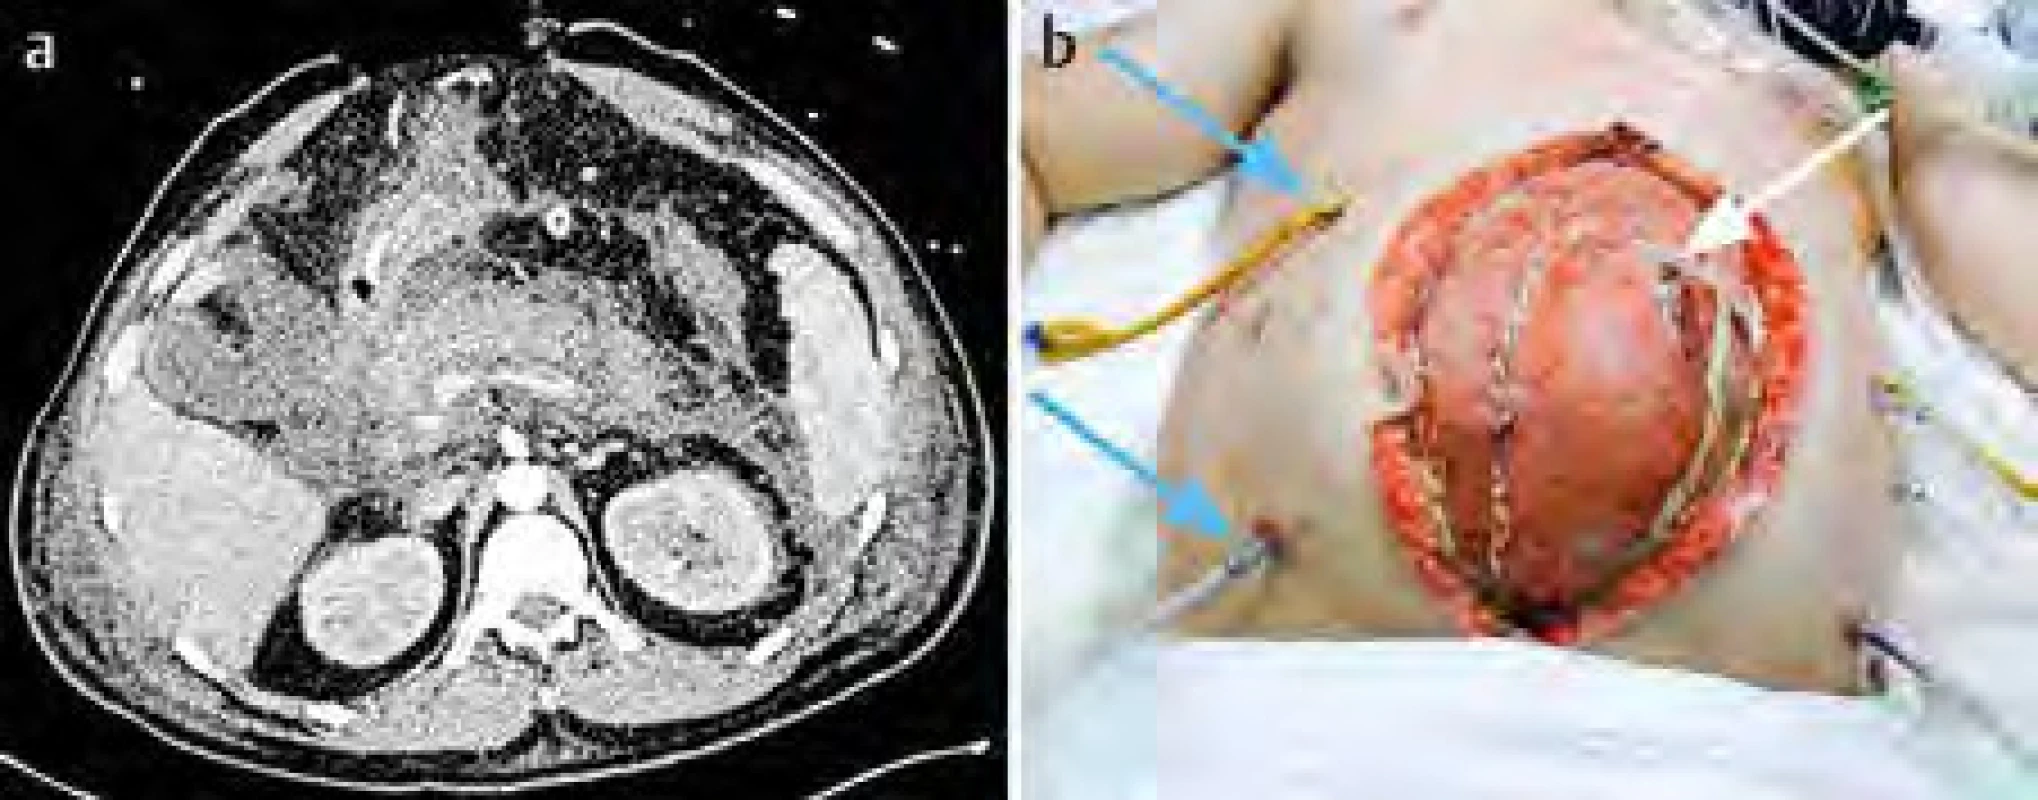  a) CT vyšetření u těžké akutní pankreatitidy zaměřené na okrsky nekróz; b) chirurgicky provedená
laparostomická dekomprese (bílá šipka ukazuje na vloženou síťku, modré šipky ukazují na proplachovací drény)